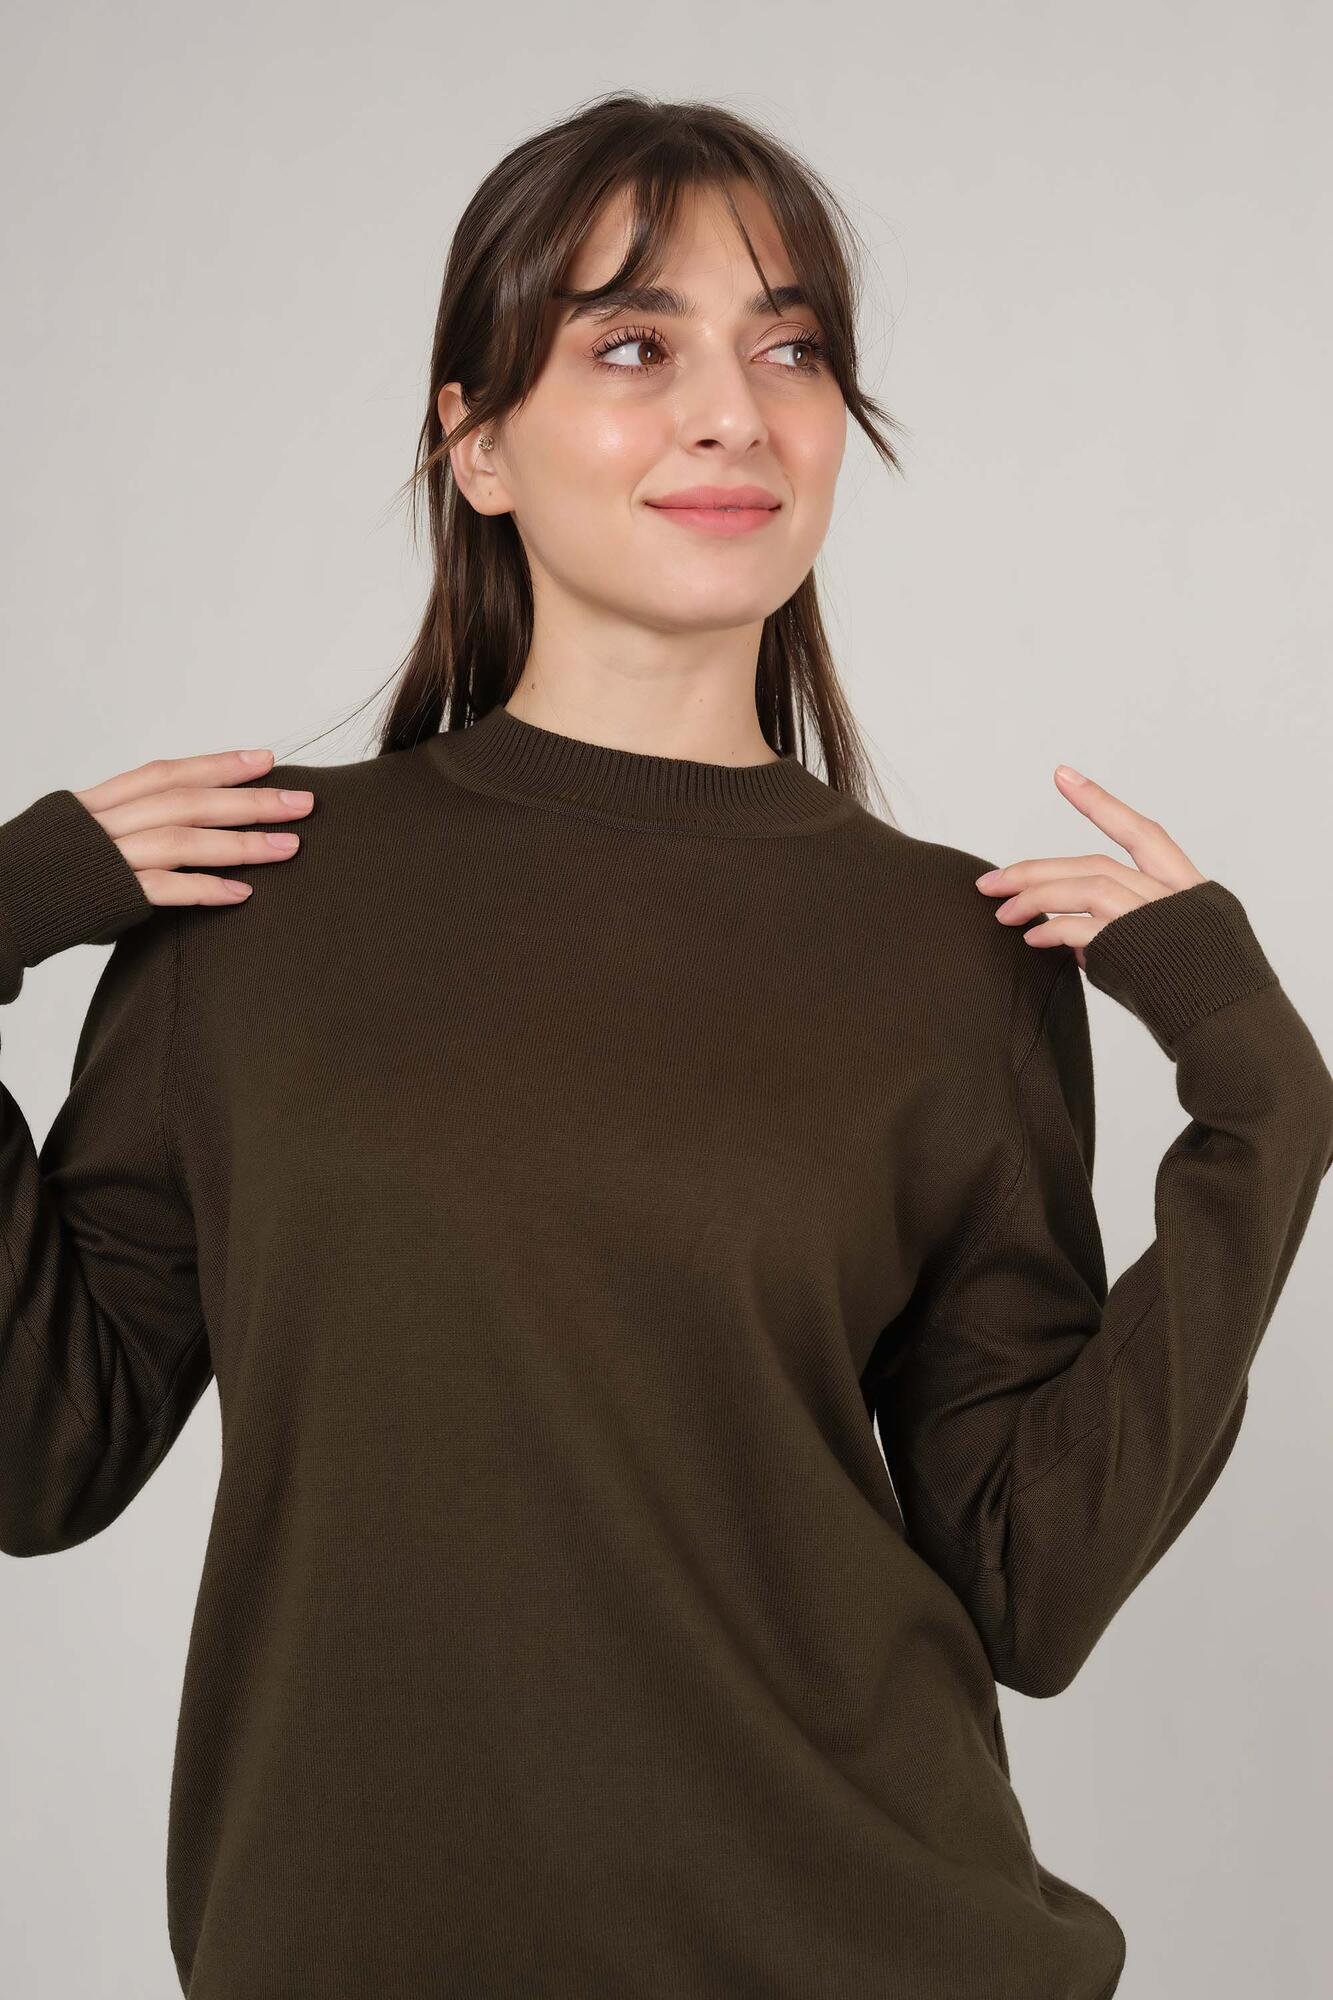 Basic Khaki Sweater